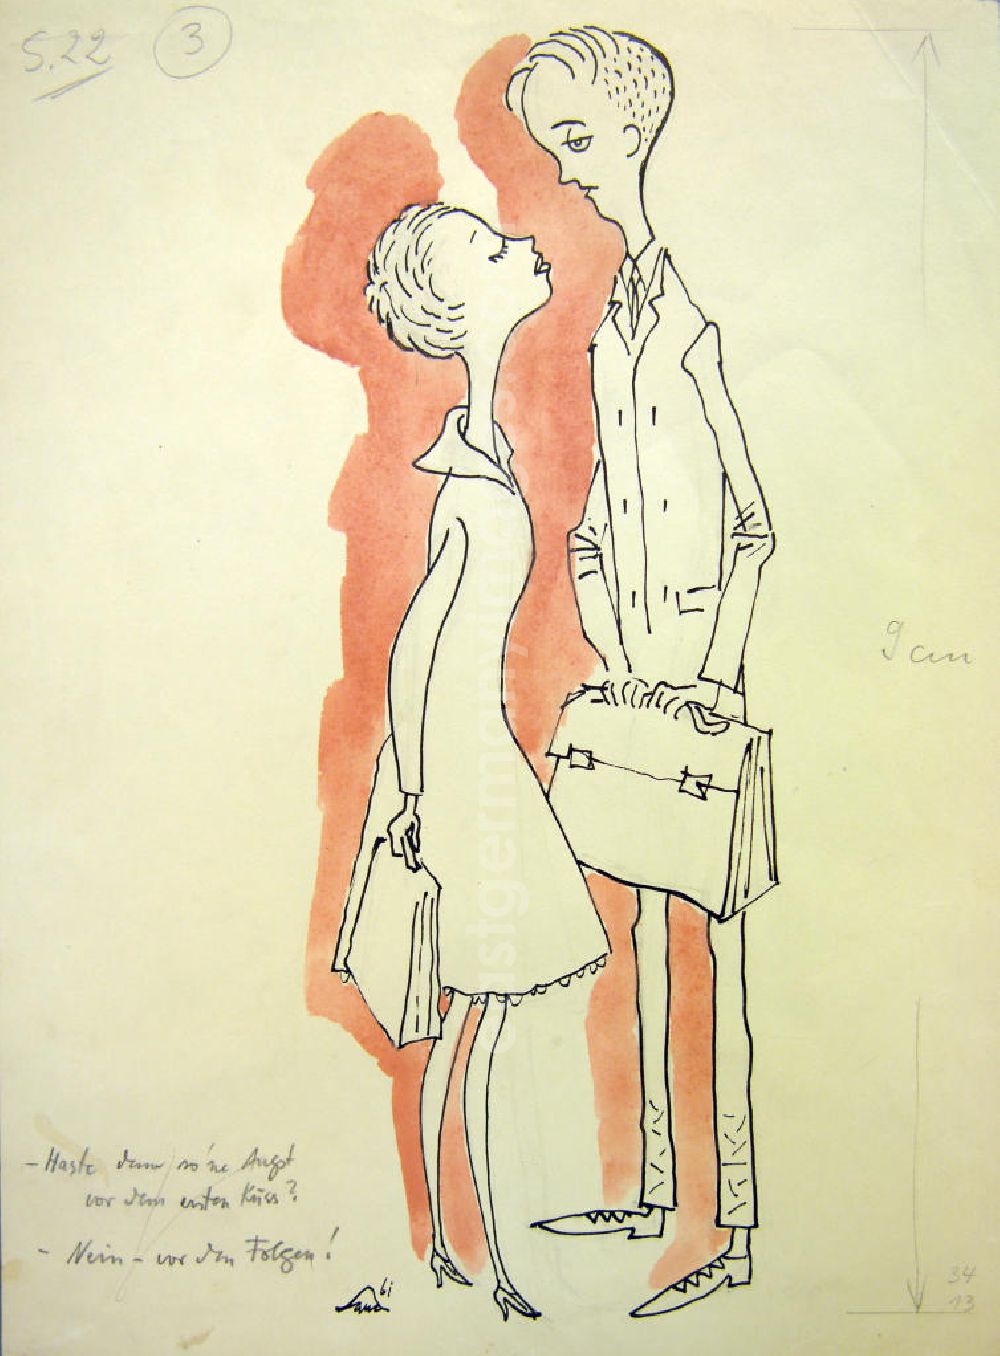 GDR picture archive: Berlin - Zeichnung von Herbert Sandberg Der erste Kuss aus dem Jahr 1961, 13,5x35,